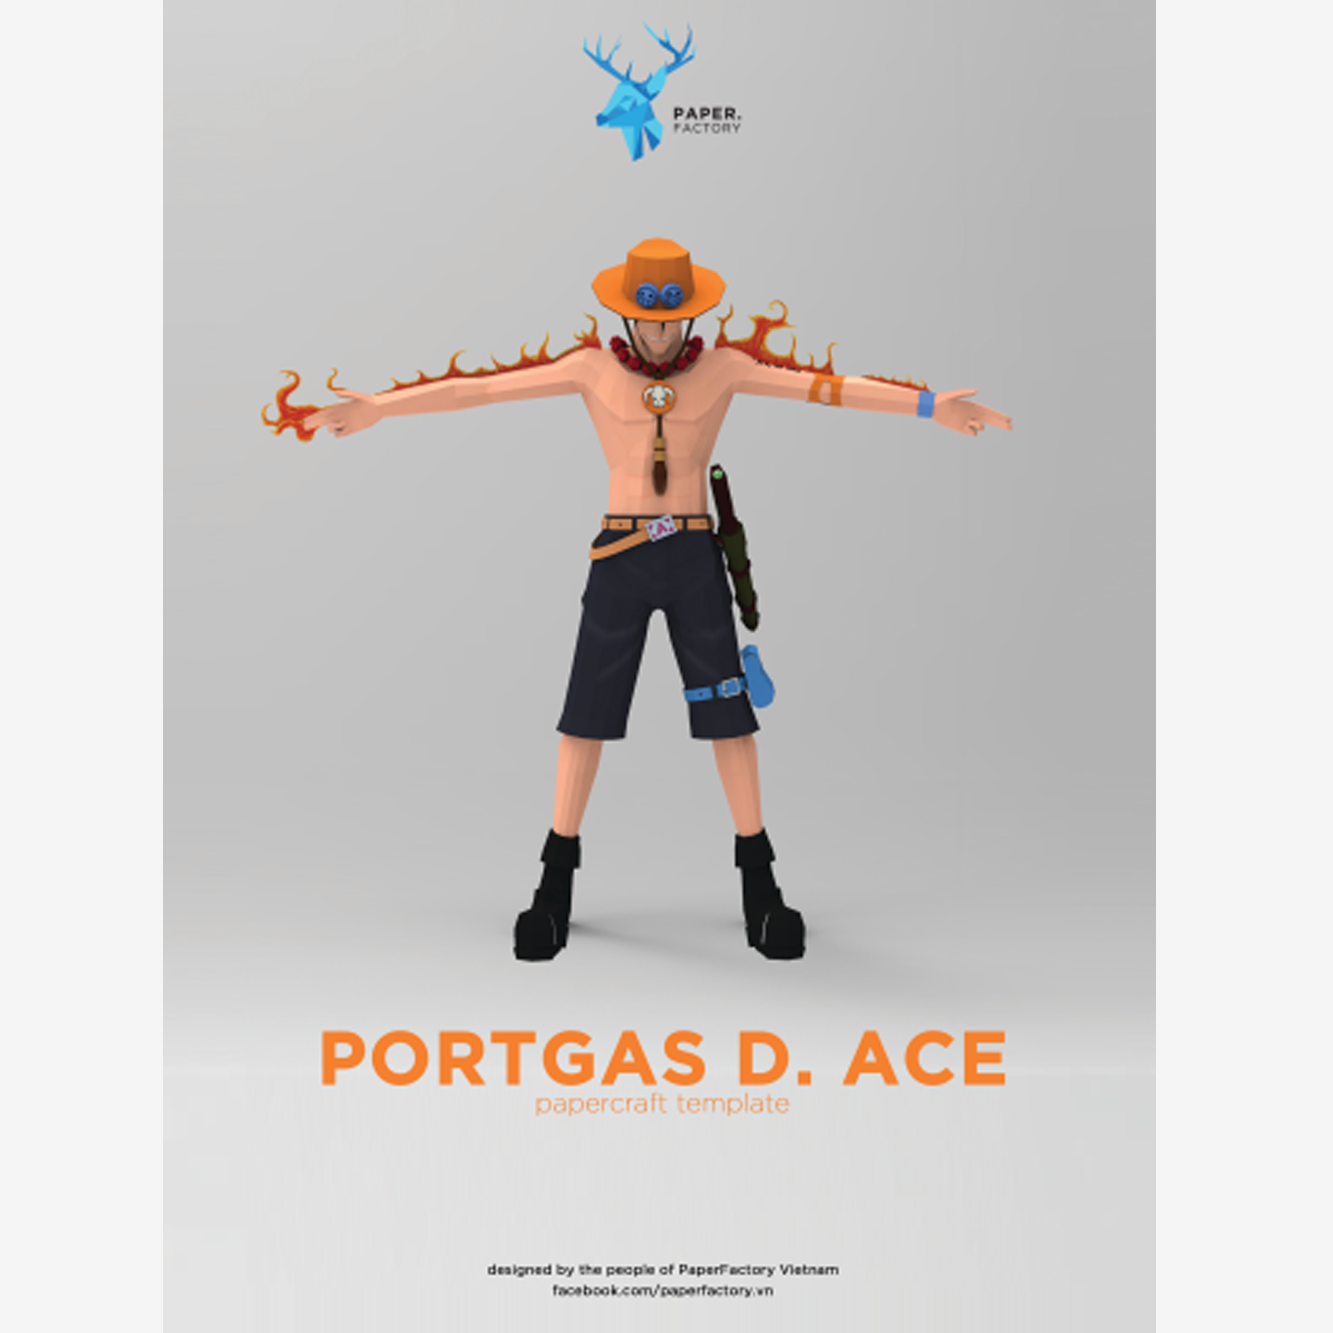 [One Piece] Portgas D. Ace